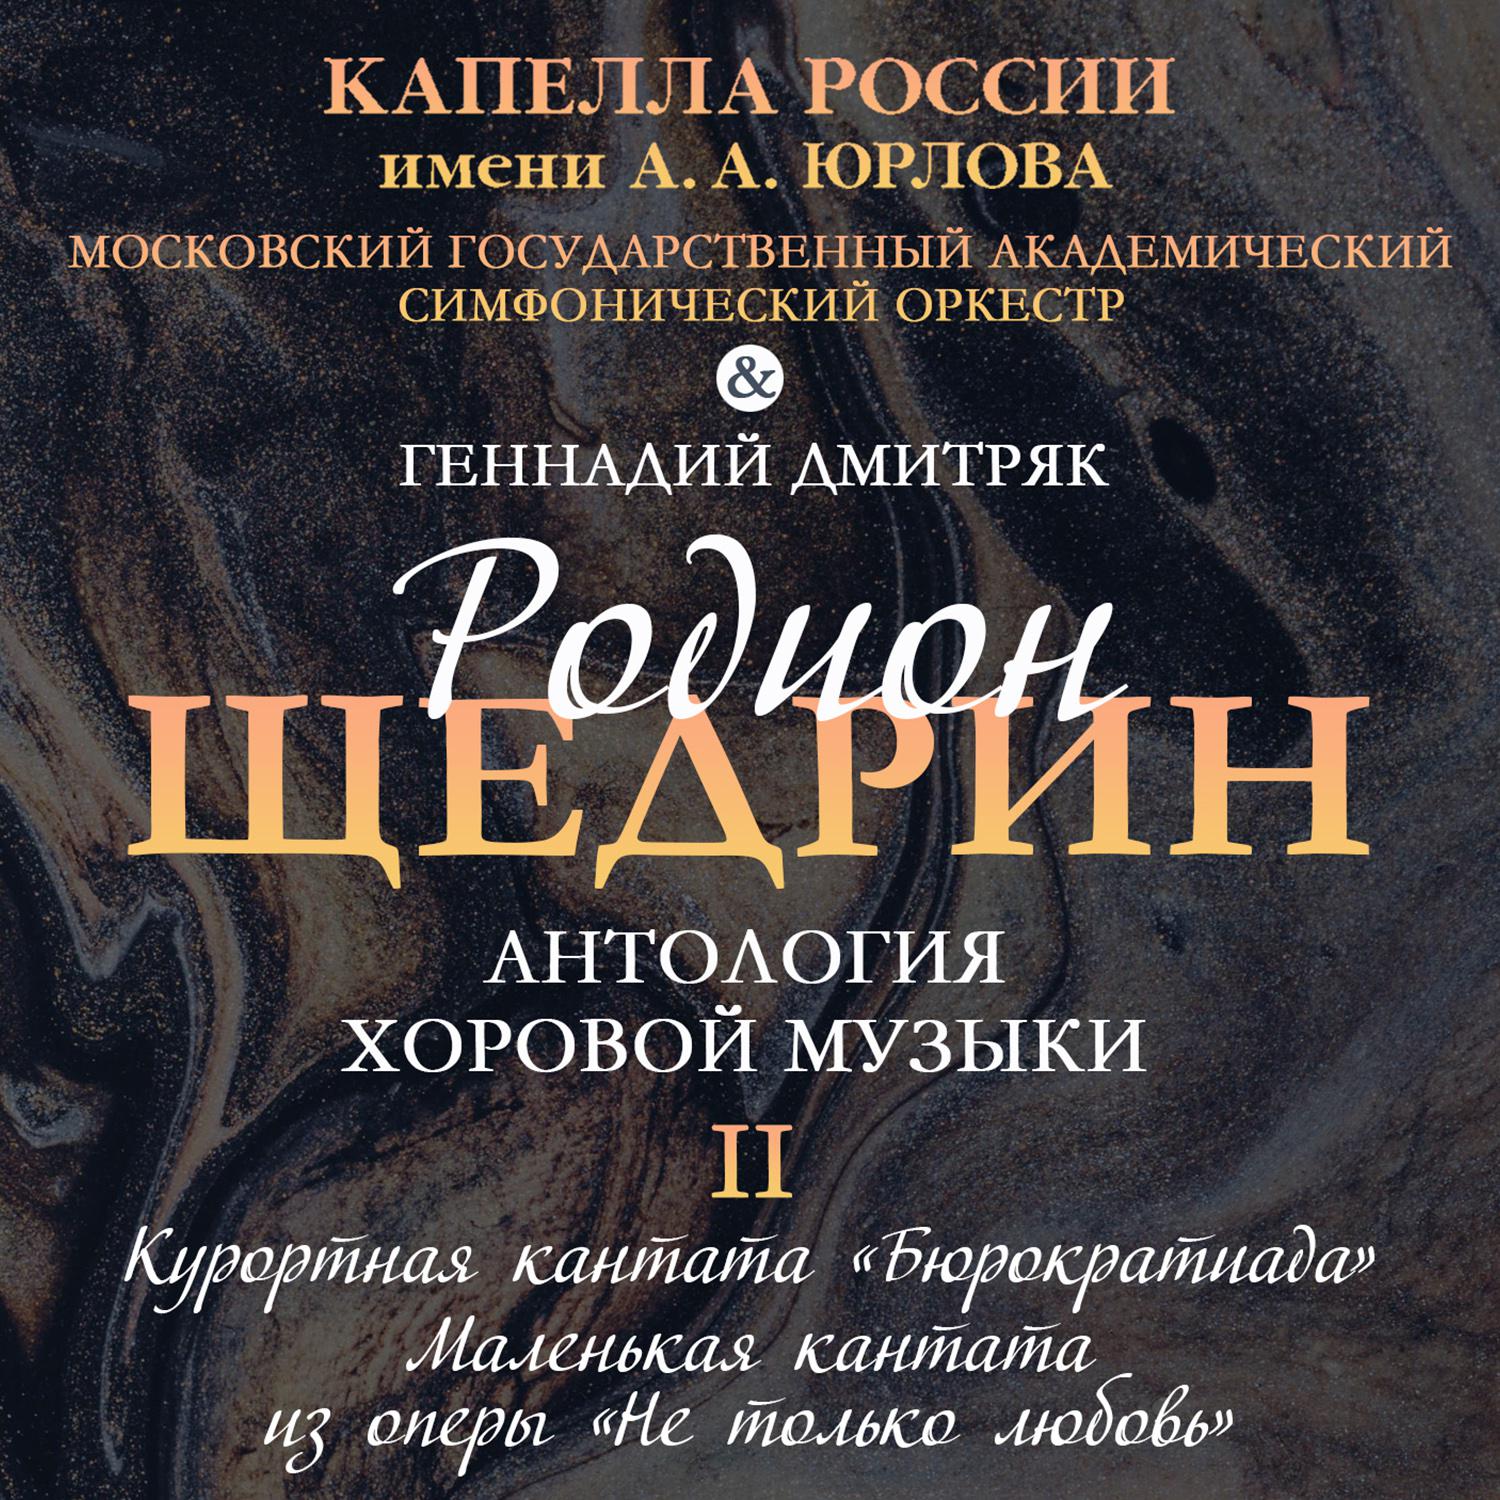 Постер альбома Антология хоровой музыки Родиона Щедрина. Том II